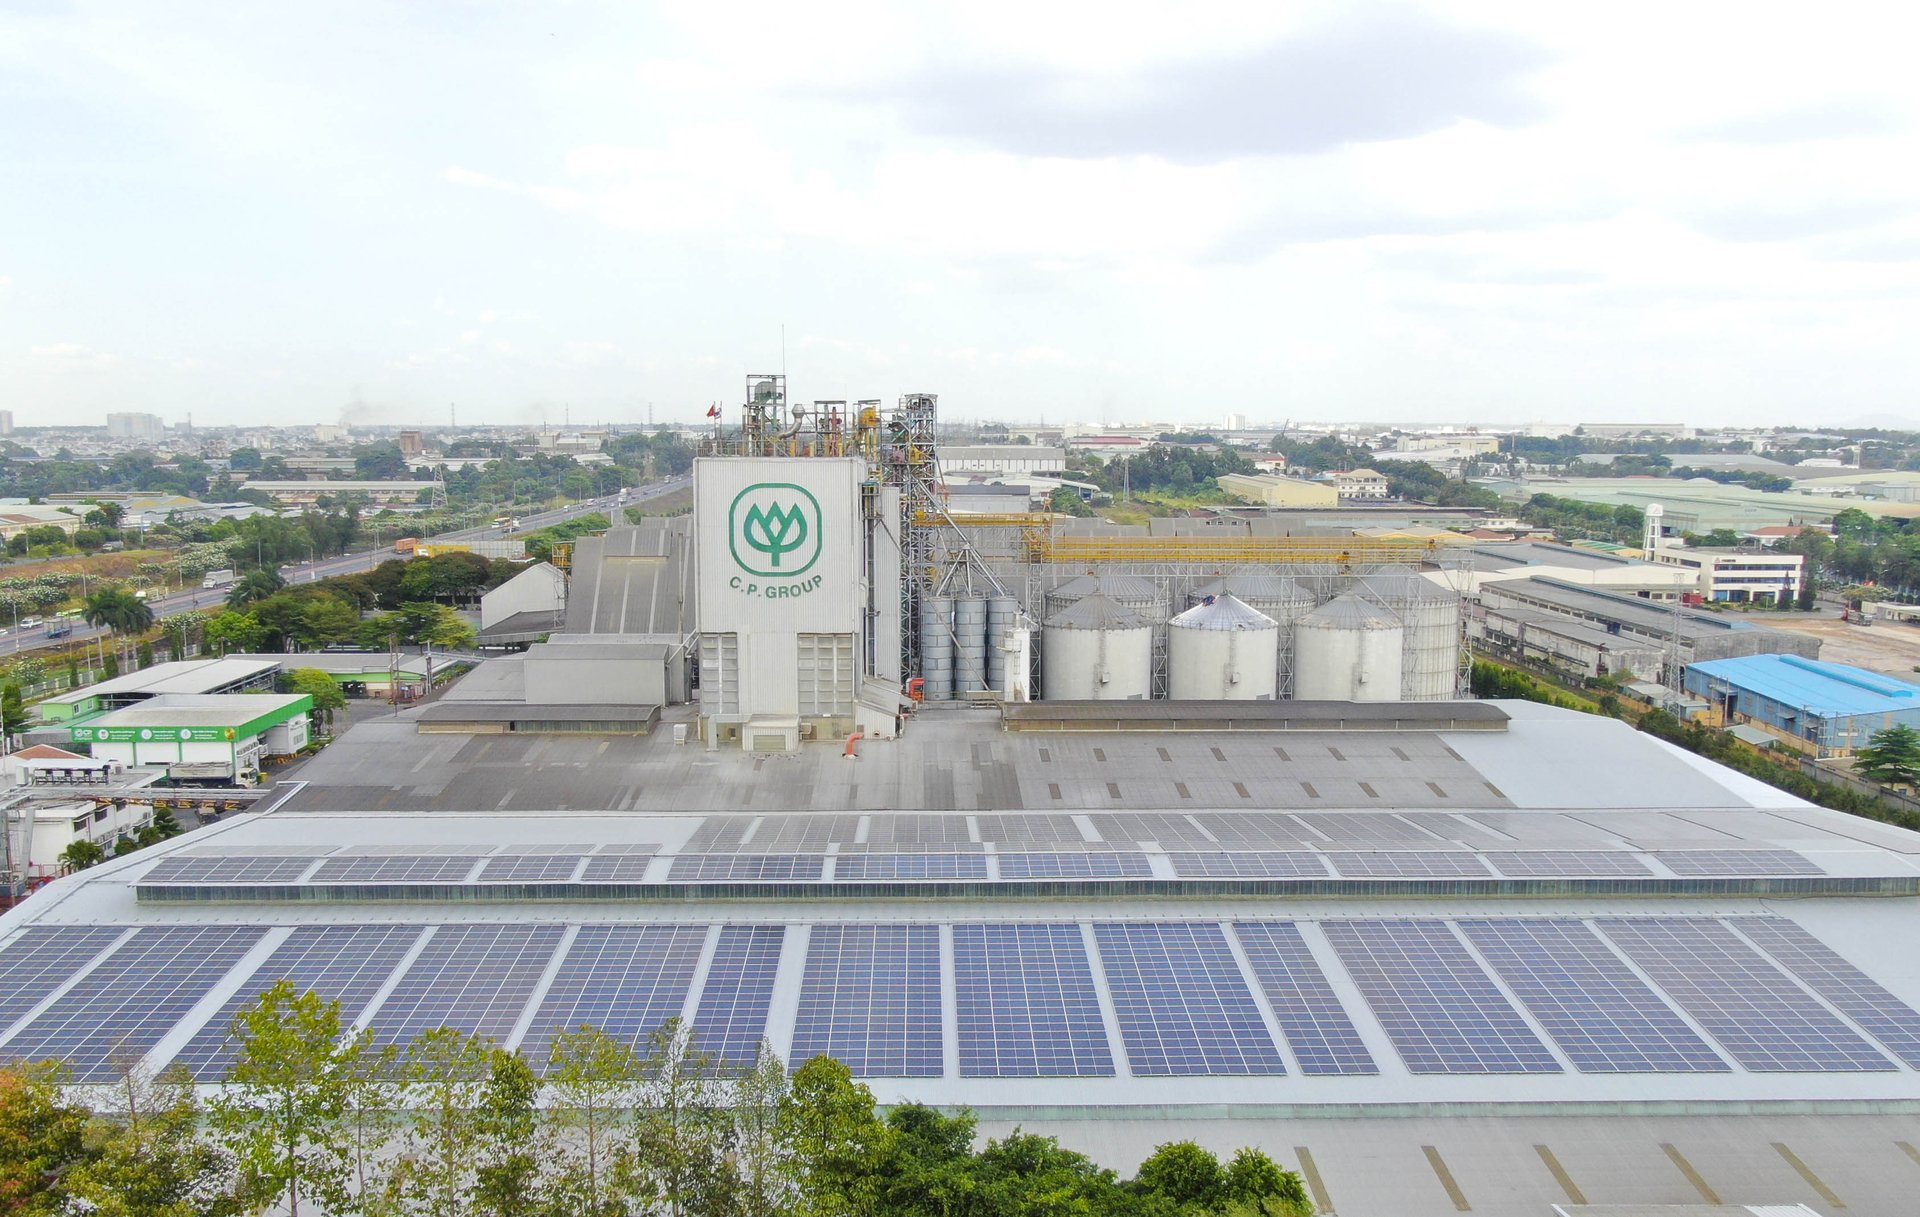 Tấm pin năng lượng mặt trời lắp trên mái một nhà máy của C.P. Việt Nam. Ảnh: Thanh Sơn.